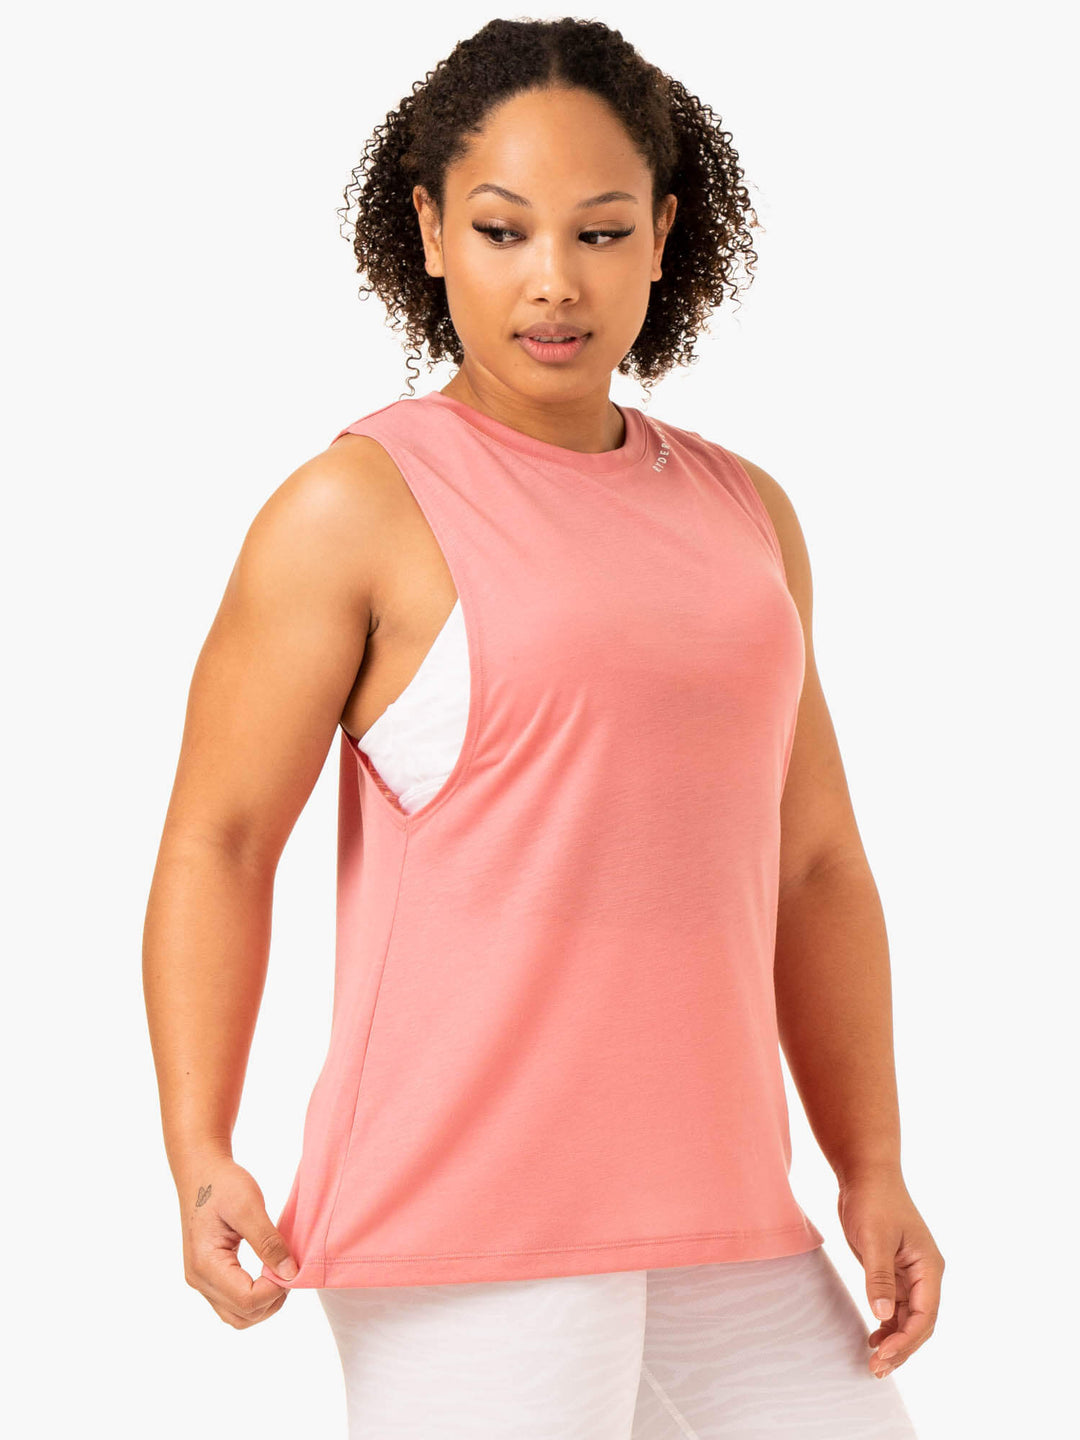 Emerge Training Tank - Pink Clothing Ryderwear 